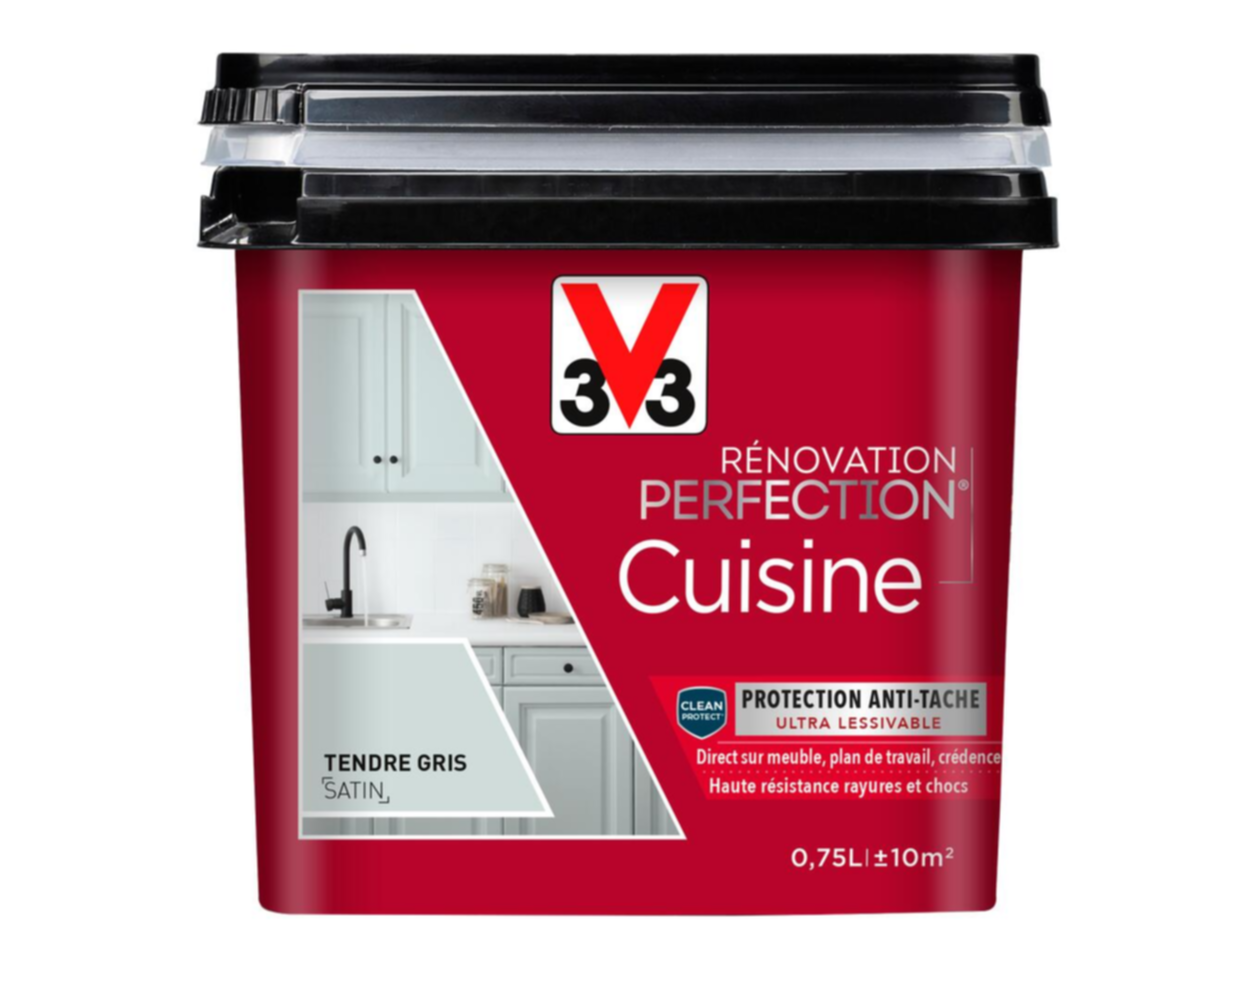 Peinture rénovation cuisine Perfection tendre gris satin 0,75l - V33